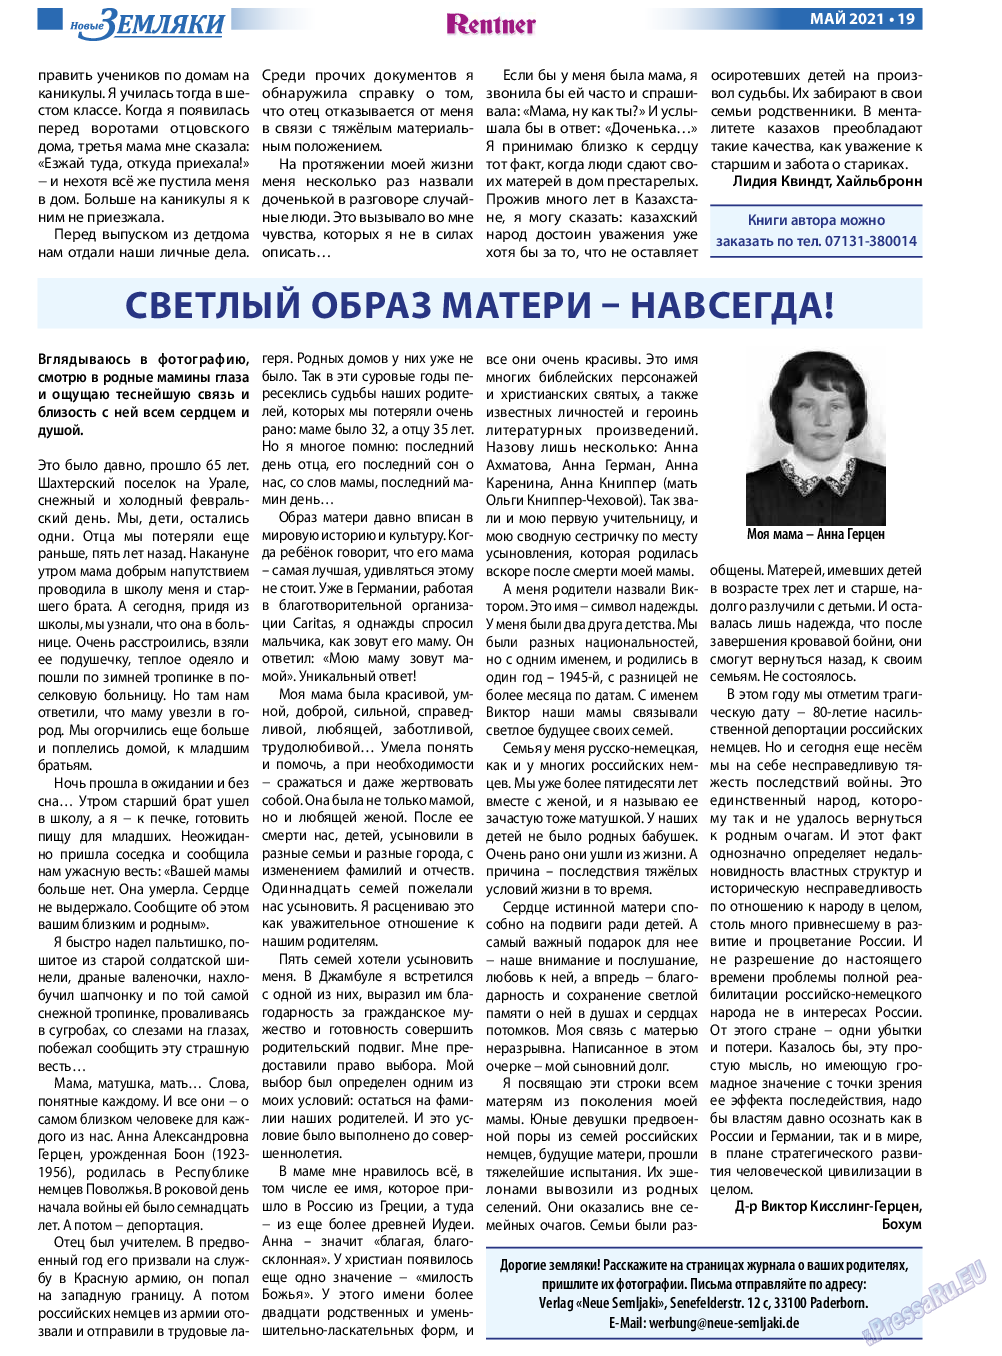 Новые Земляки, газета. 2021 №5 стр.19